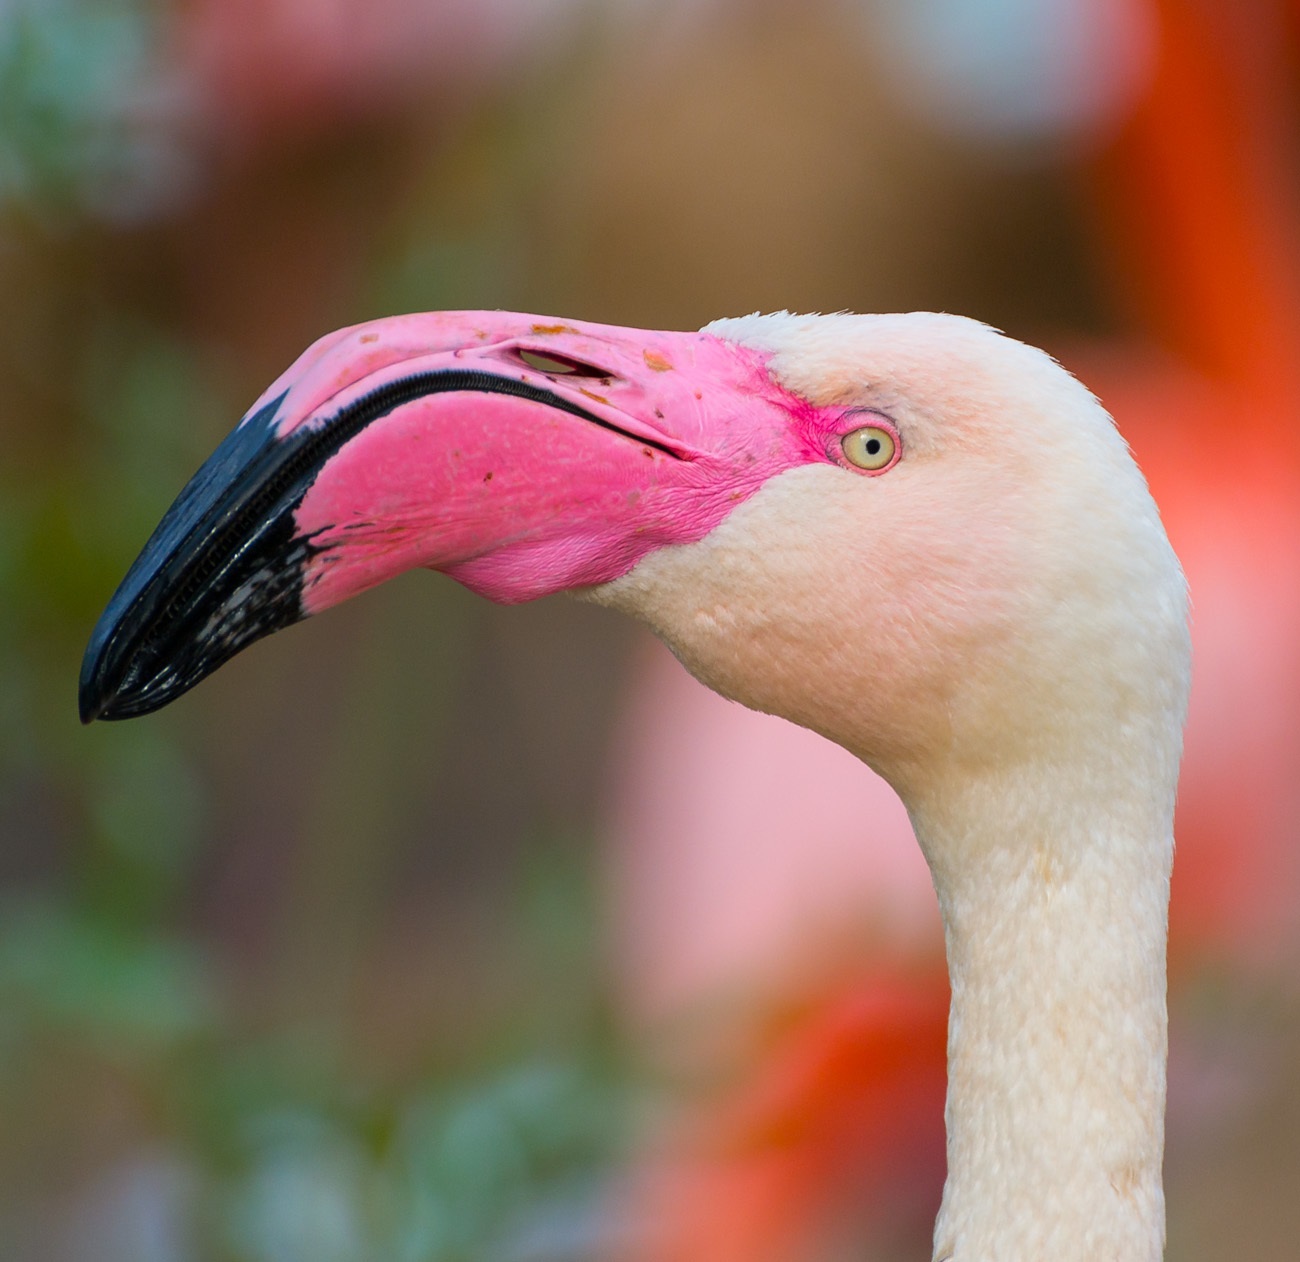 Pienu curvatu di flamingo roscu